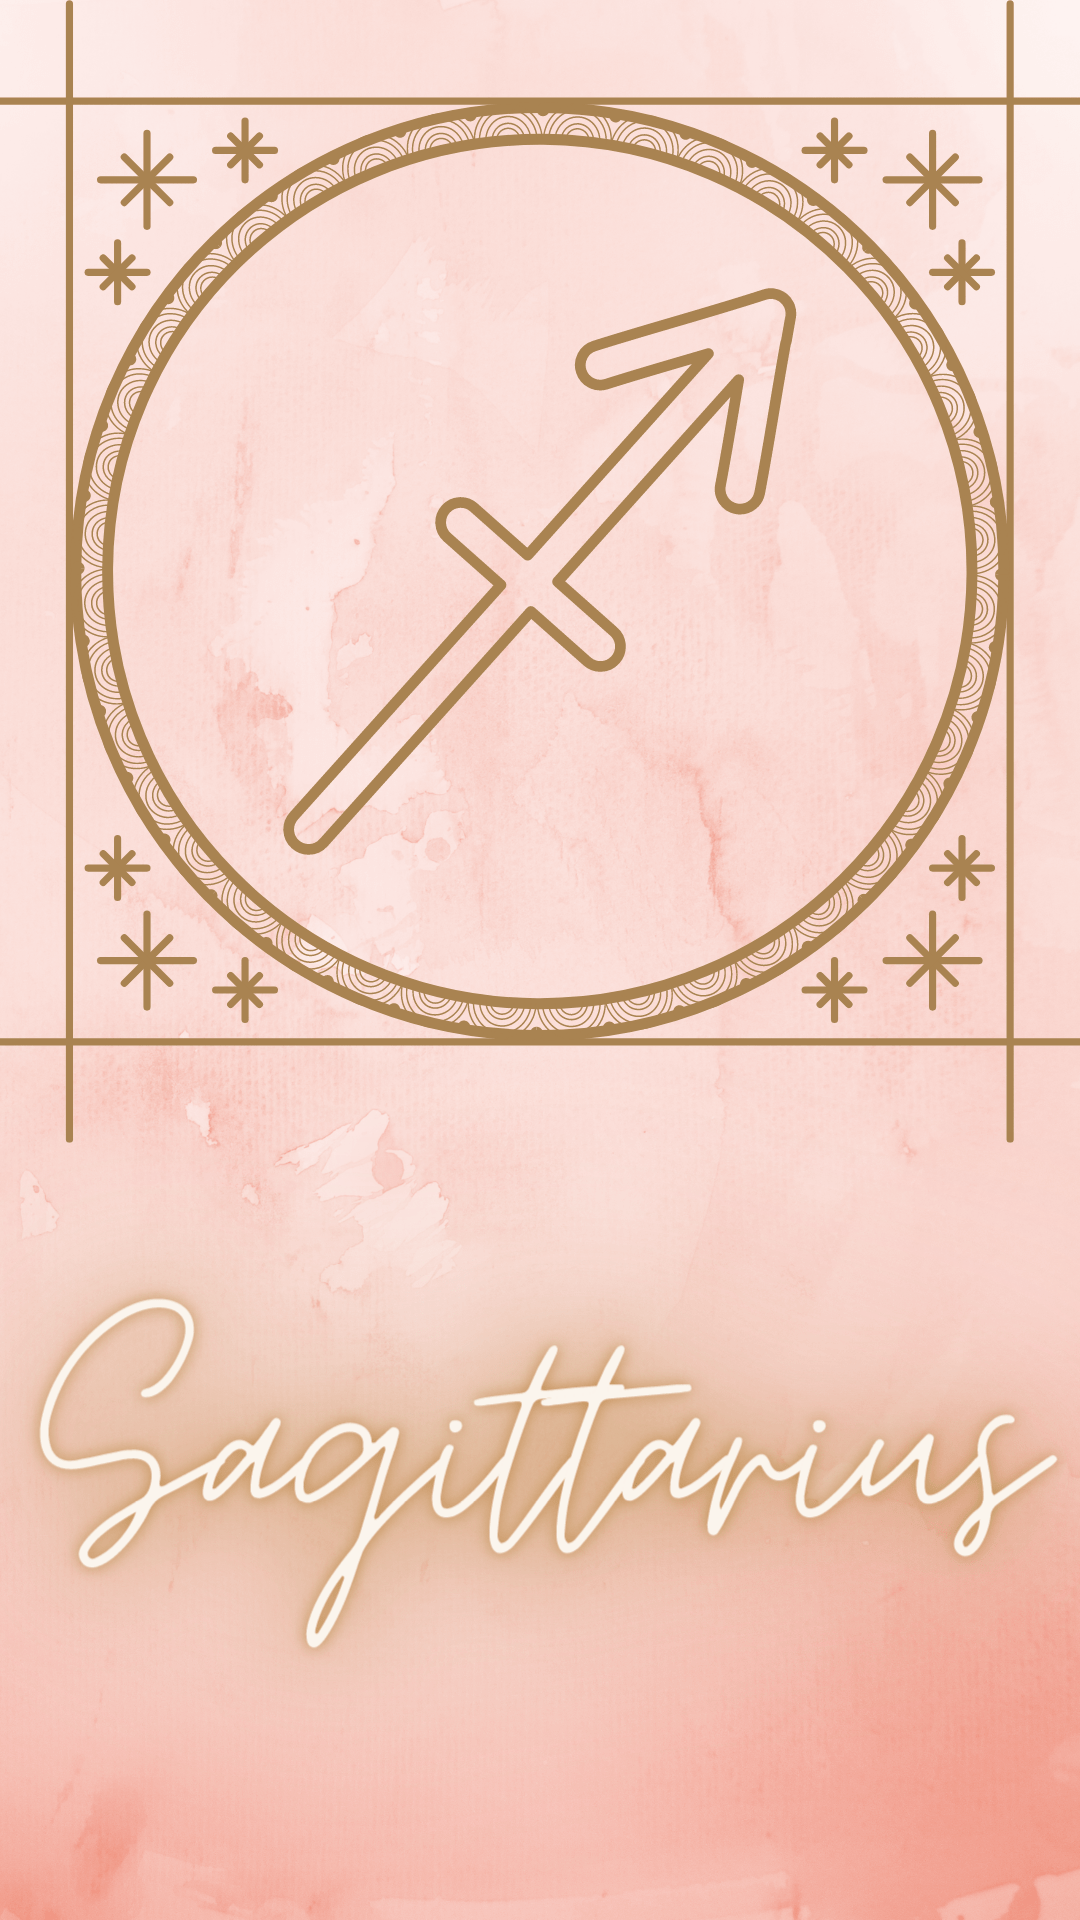 Sagittarius Zodiac Phone Wallpaper/ Background. Sagittarius wallpaper, Zodiac sagittarius art, Sagittarius